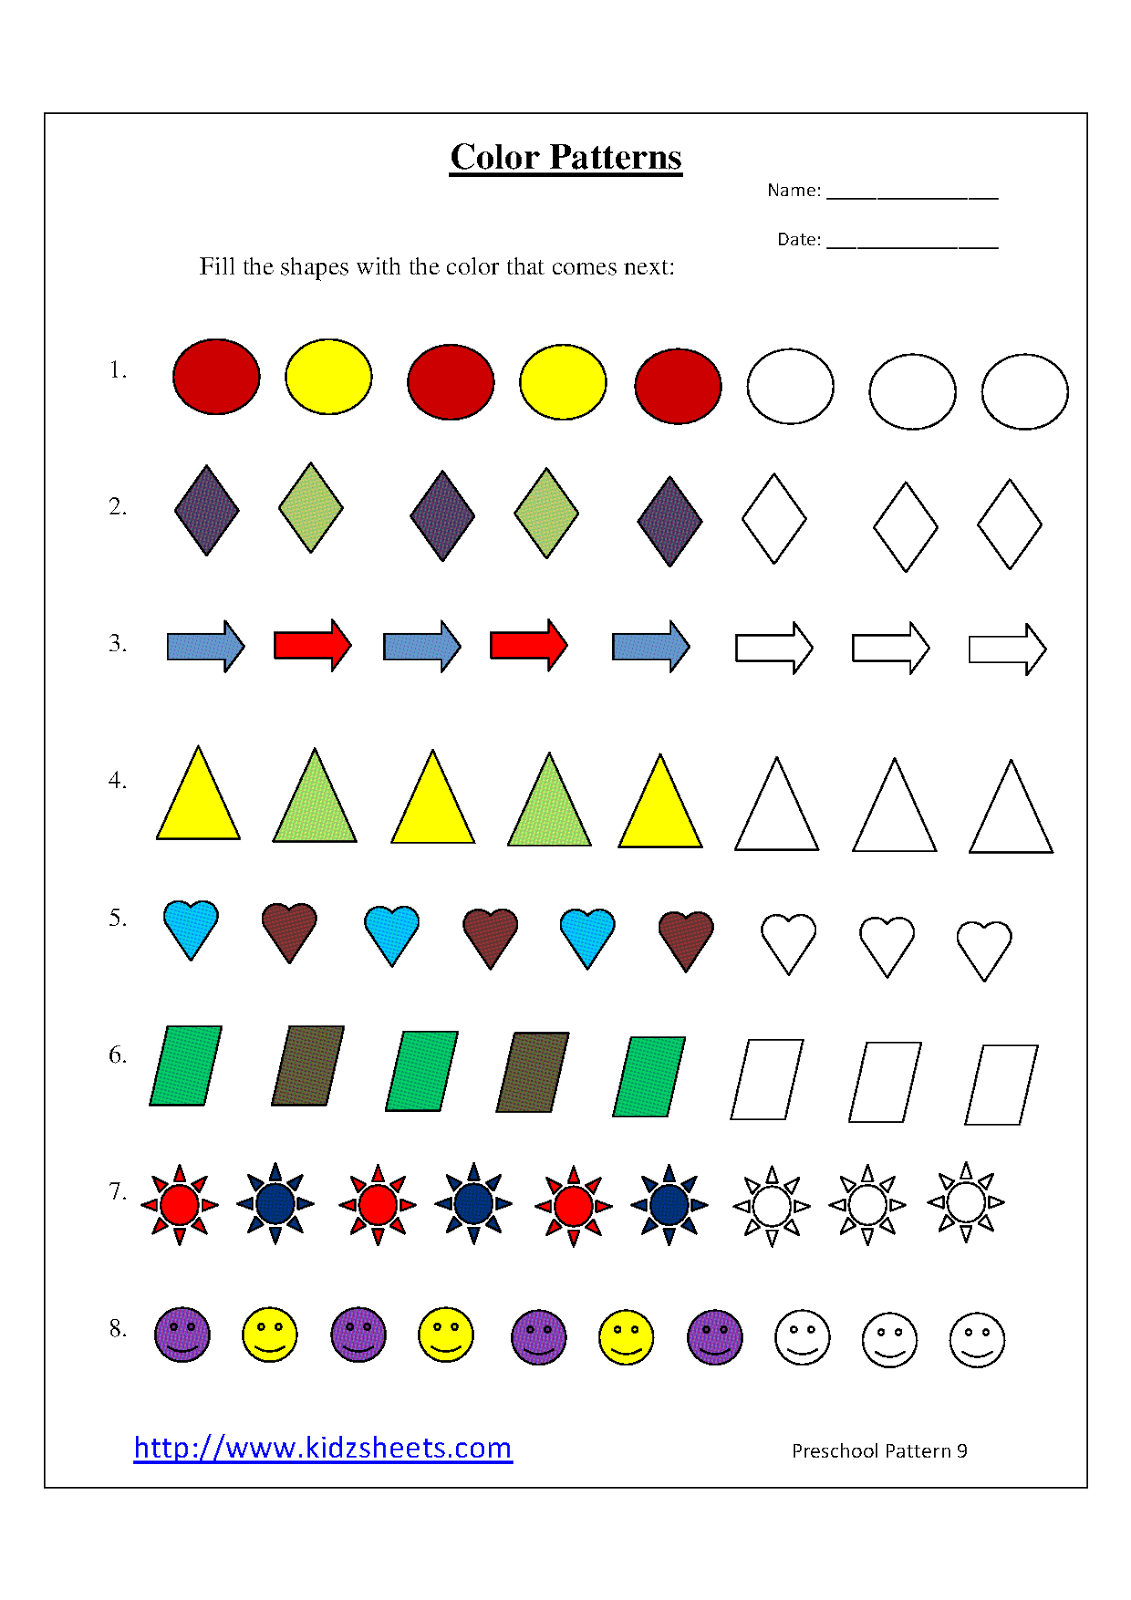 kindergarten worksheet patterns color for Preschoolers For Colors About Free Printable Worksheets